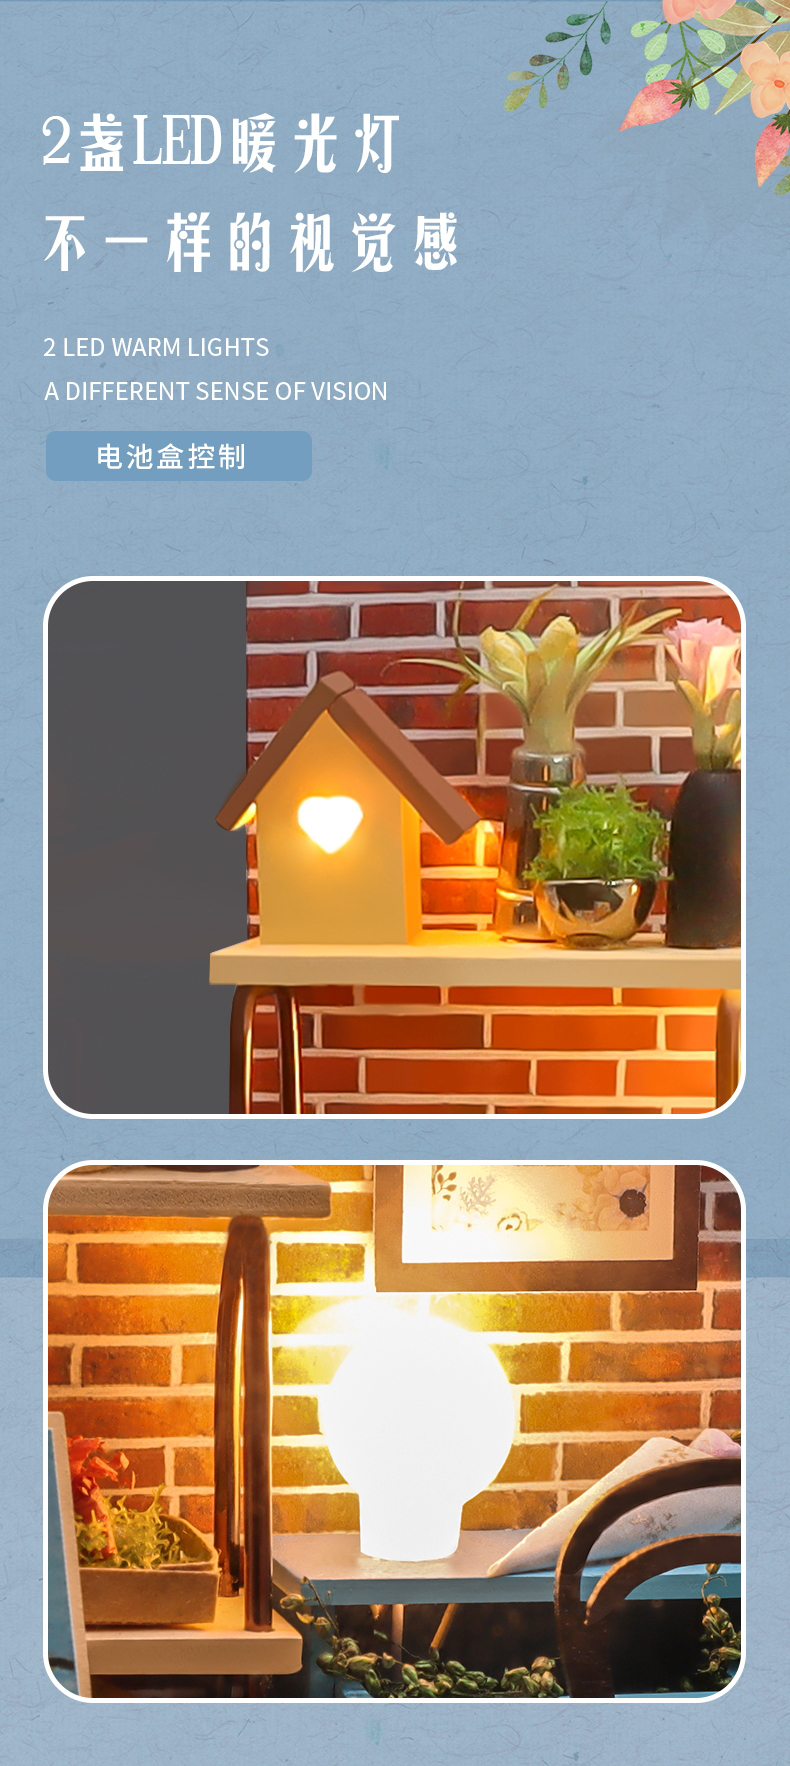 幸福立方-花开的时候diy小屋手工制作玩具拼装小房子